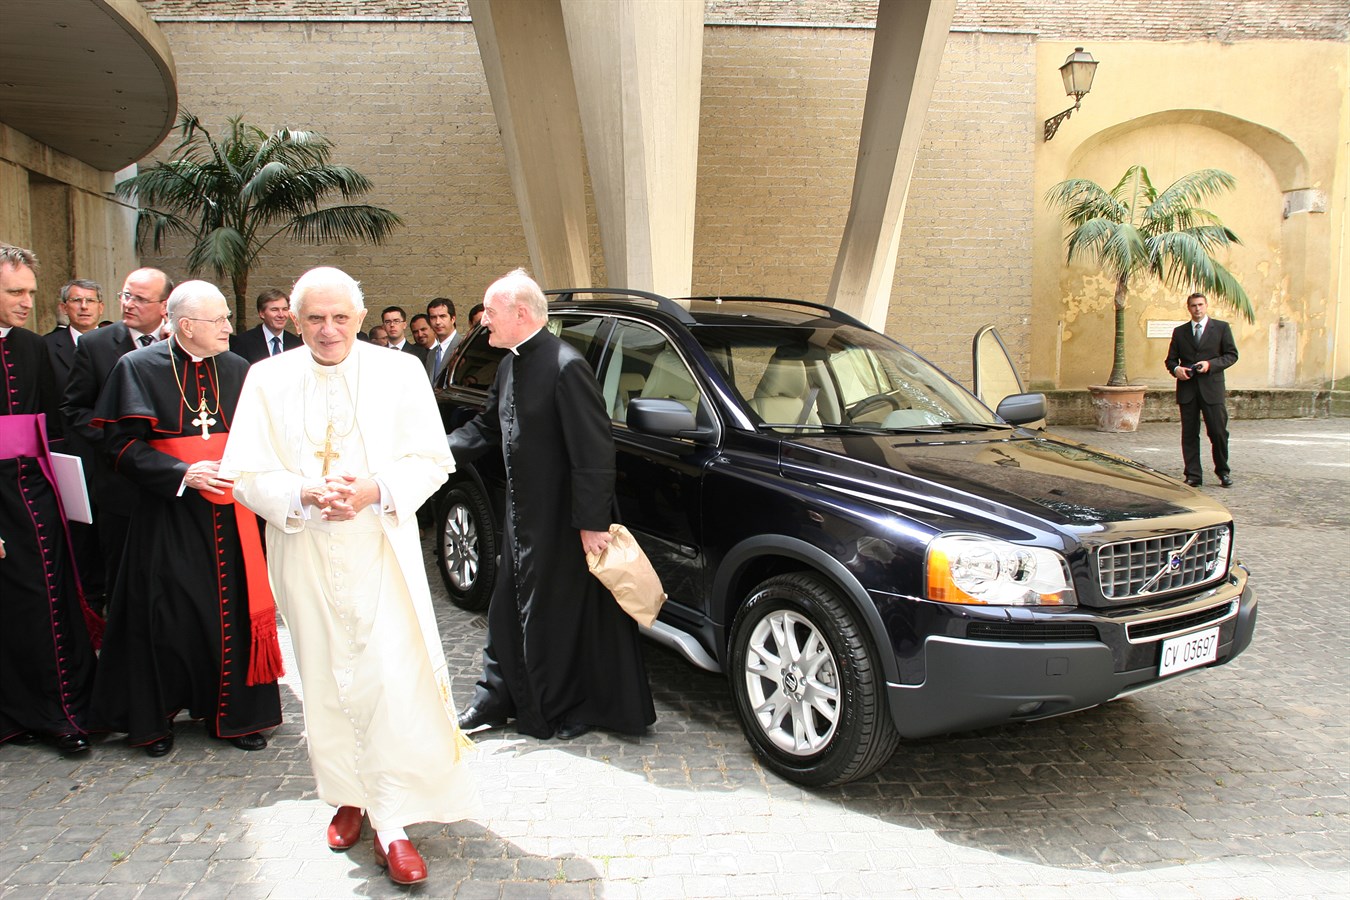 Mercoledì 28 giugno, Volvo Cars ha fatto omaggio di una Volvo XC90 a Sua Santità papa Benedetto XVI